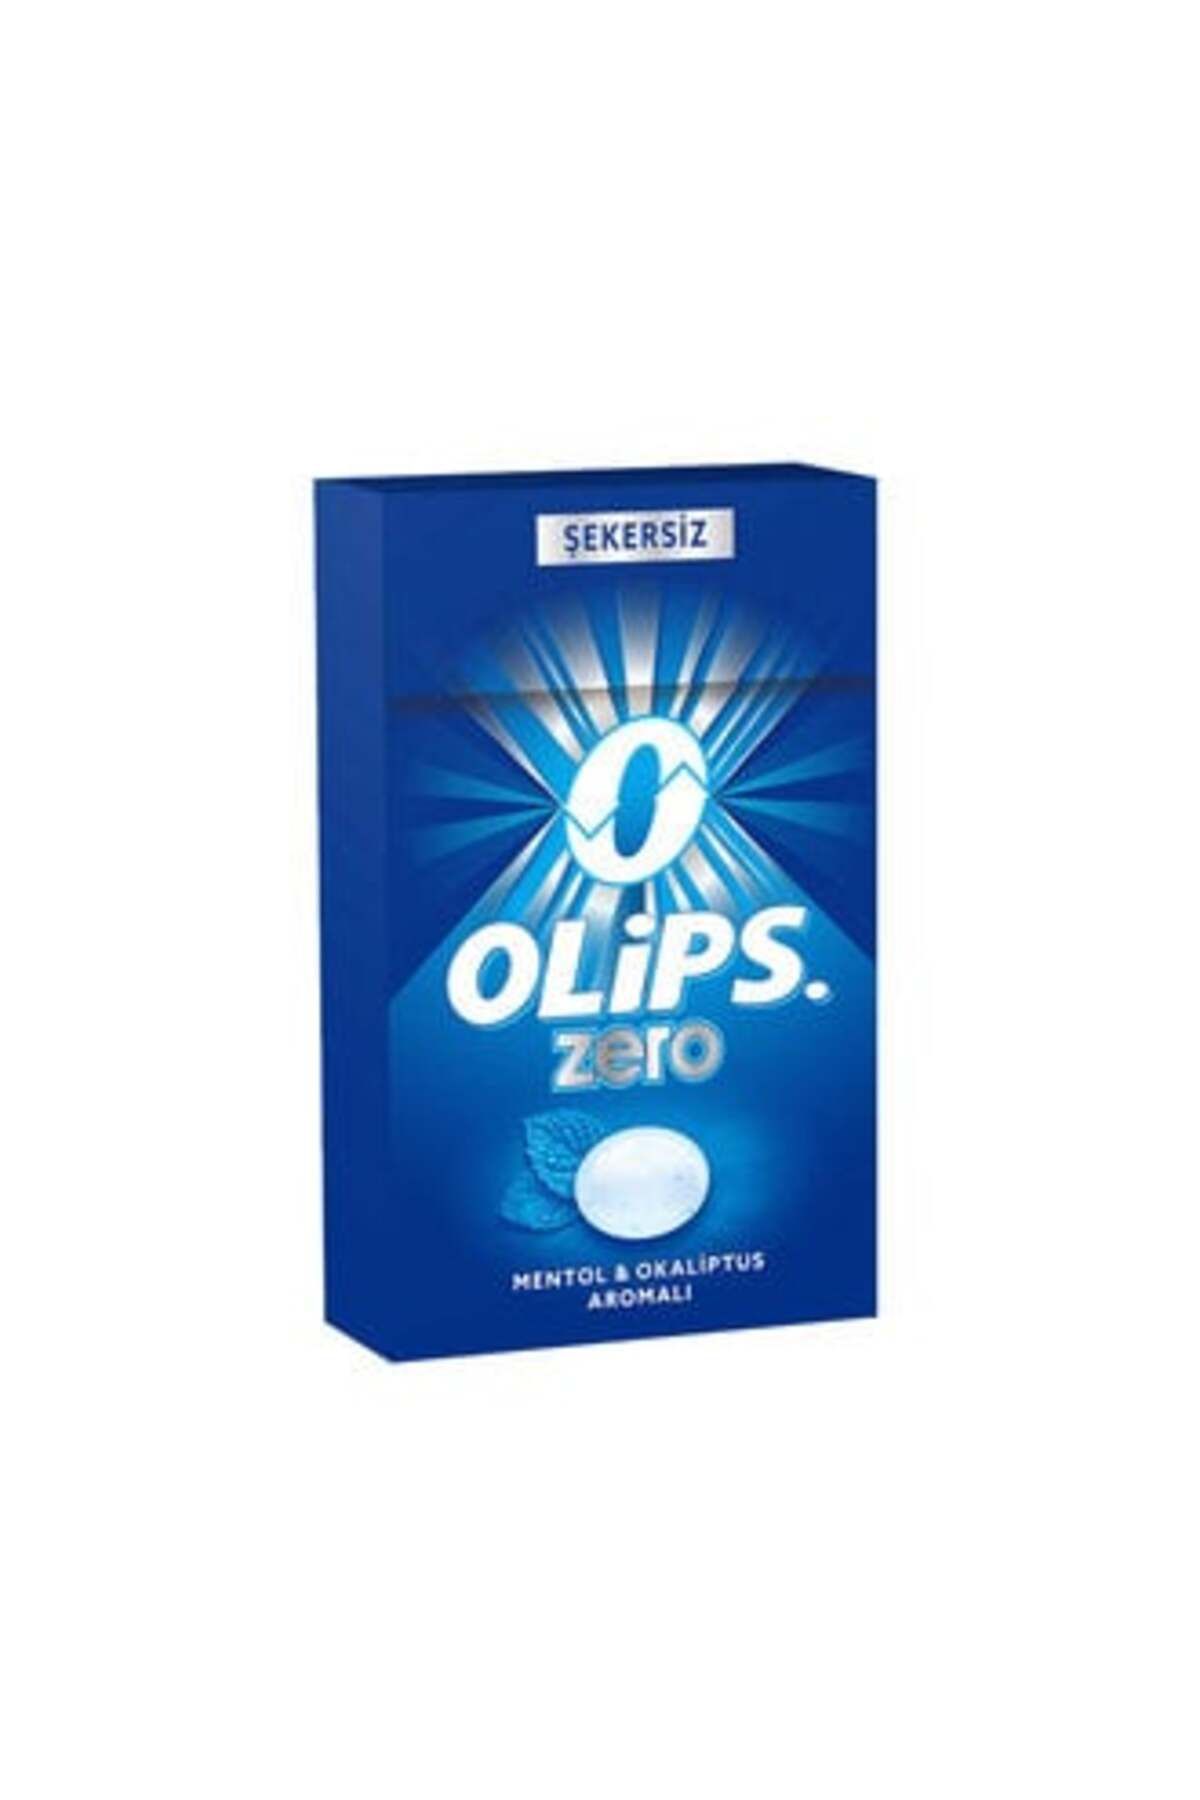 Olips ( CİNO ÇİKOLATA ) Olips Zero Cool Mentol & Okaliptus Aromalı 28 Gr ( 2 ADET )